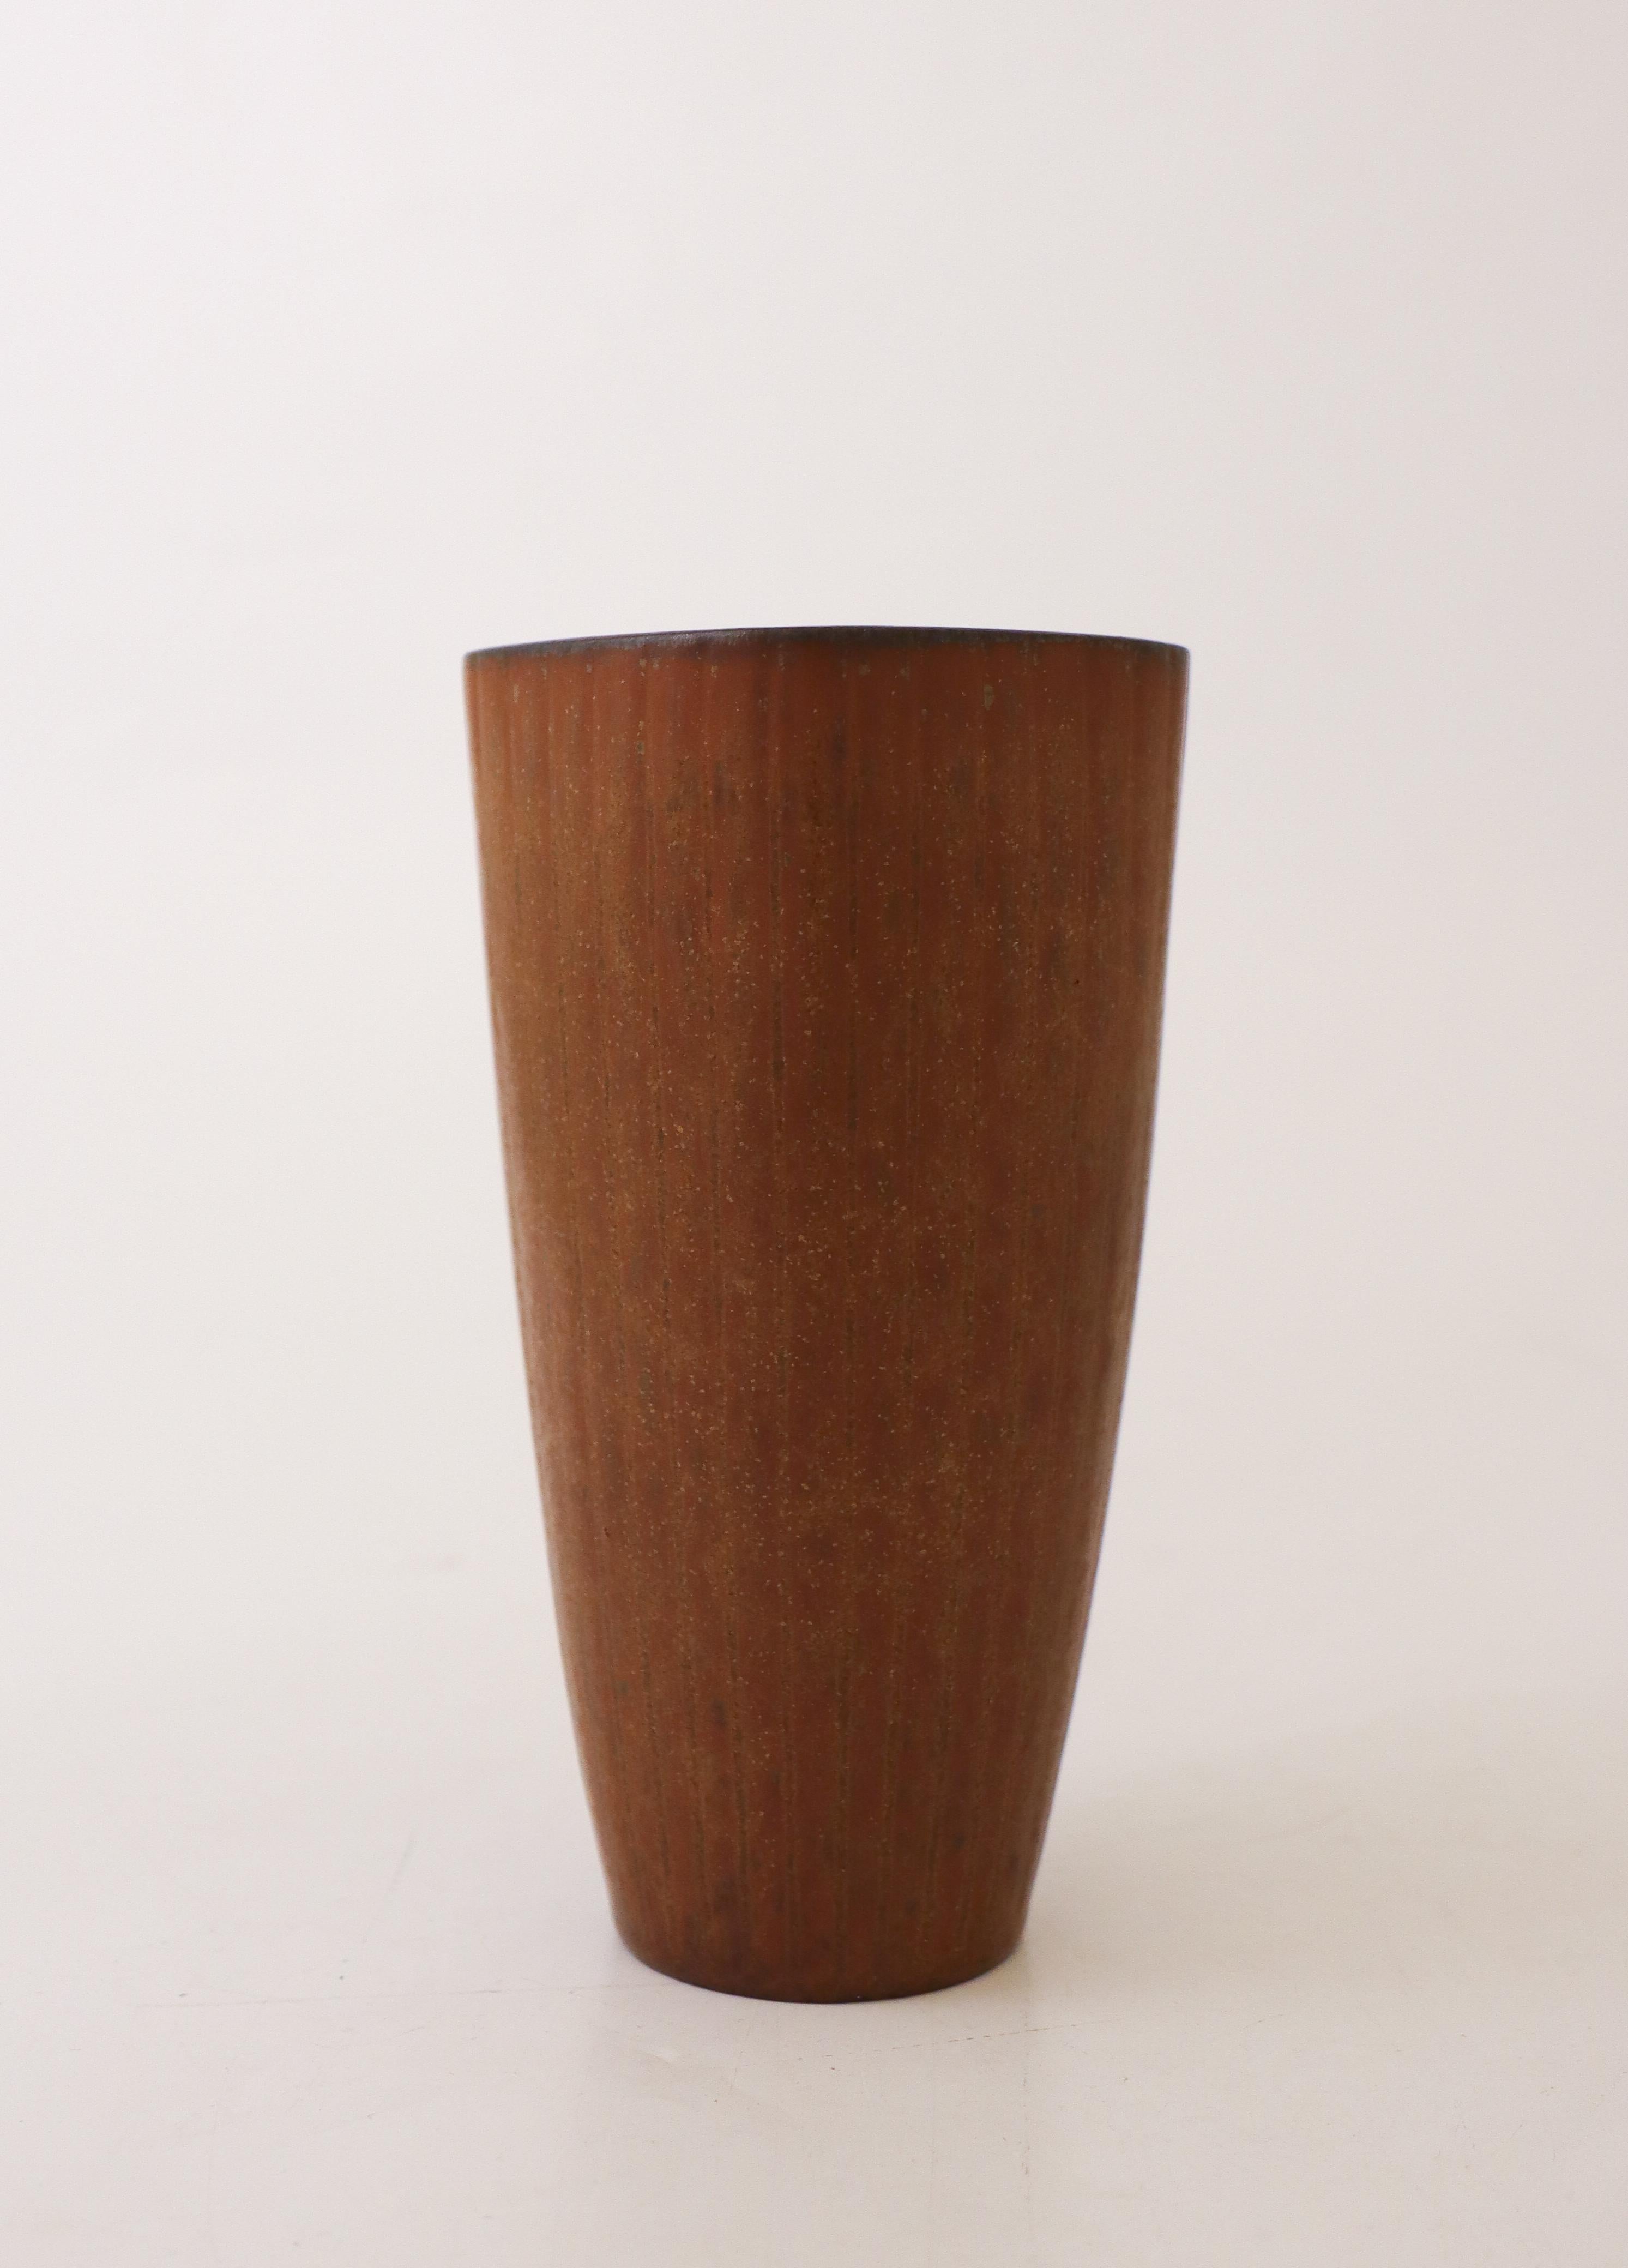 Un joli vase brun quadrillé conçu par Gunnar Nylund chez Rörstrand. Le vase mesure 15 cm de haut et 7,5 cm de diamètre au sommet. Il est en parfait état et marqué comme étant de première qualité. 

Gunnar Nylund est né à Paris en 1904 de parents